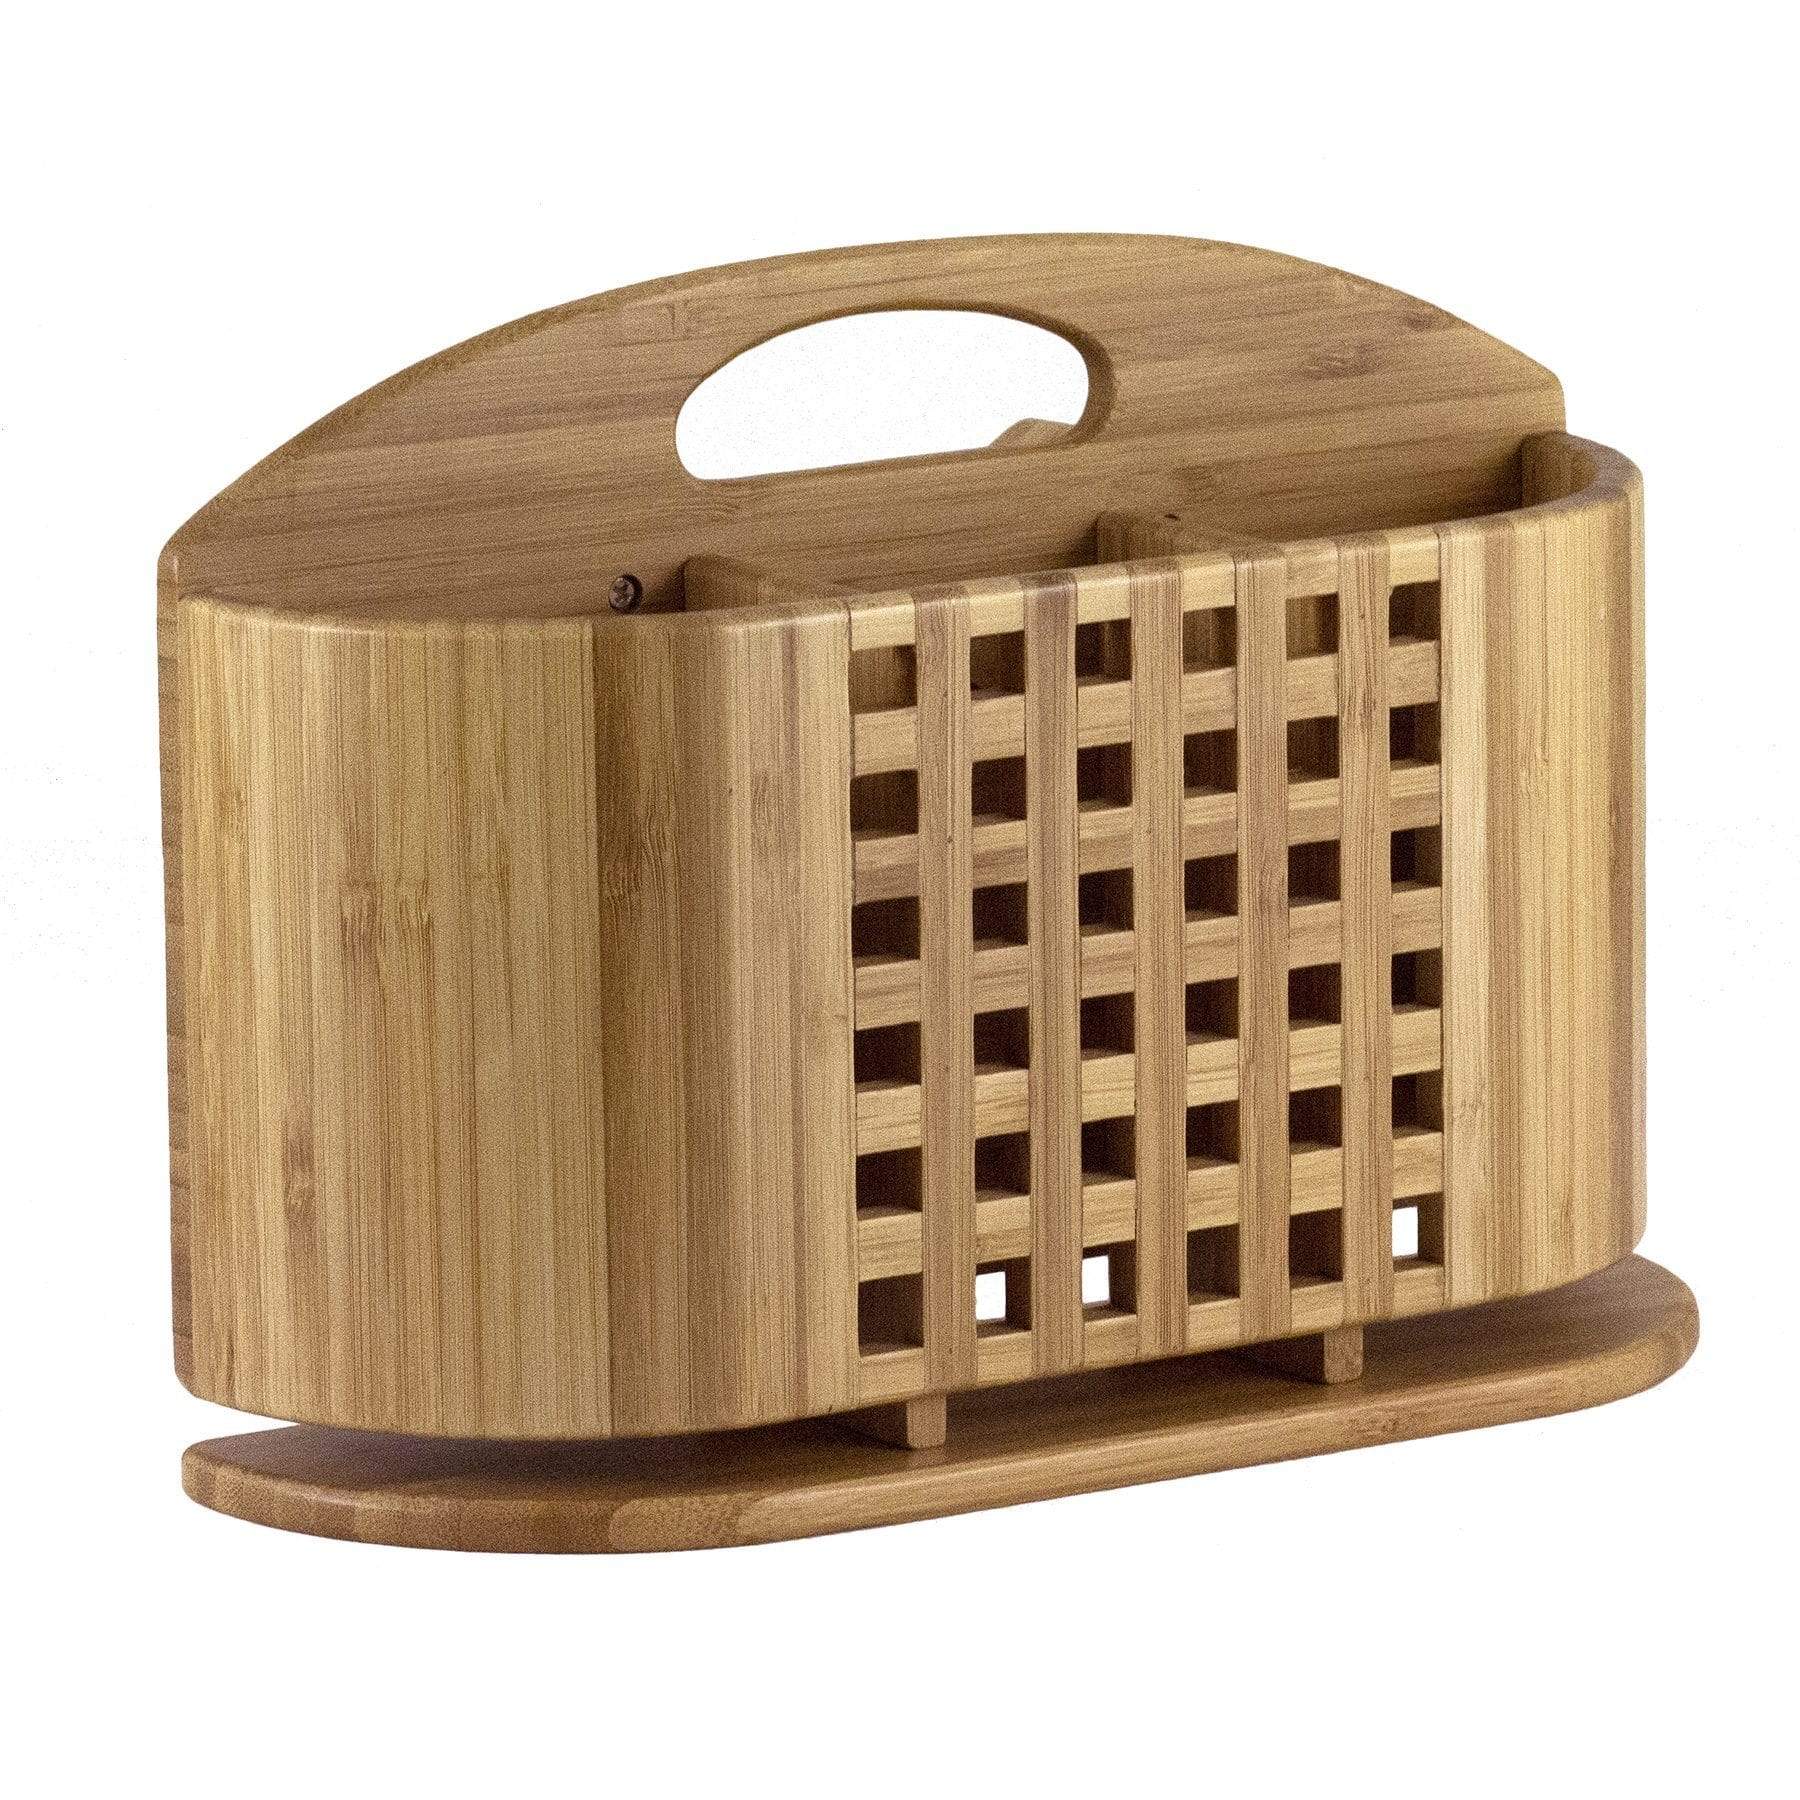 https://totallybamboo.com/cdn/shop/products/eco-dish-rack-utensil-holder-totally-bamboo-496200.jpg?v=1627674565